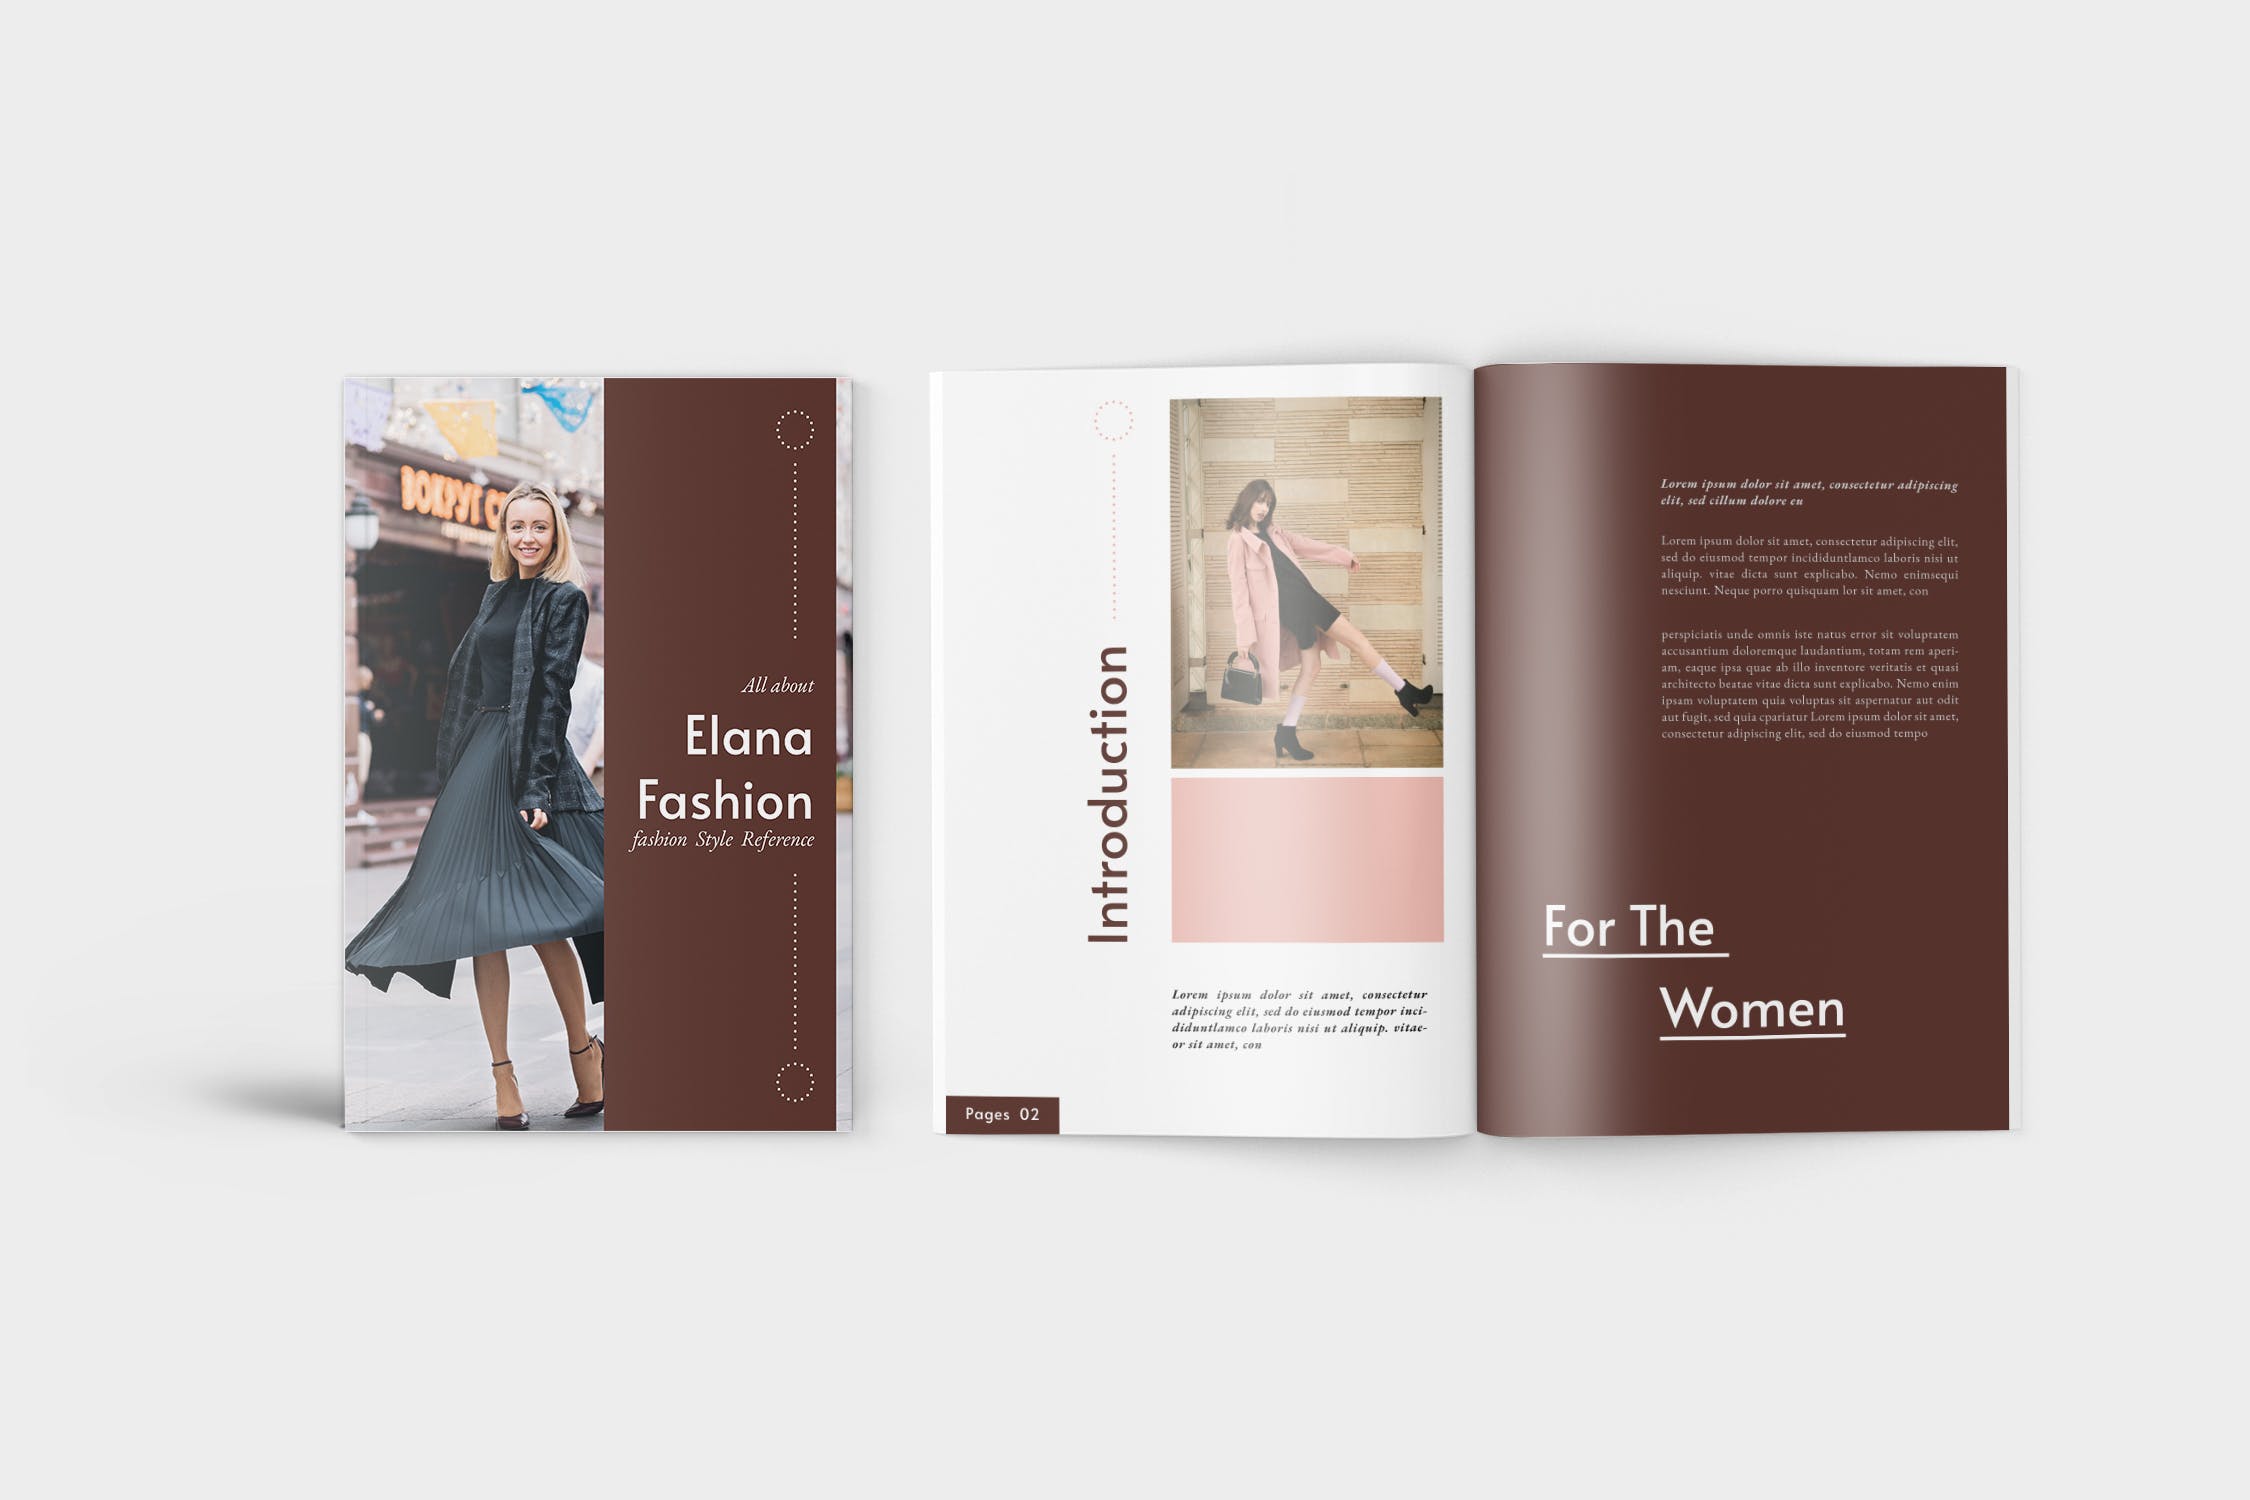 时装产品第一素材精选目录设计模板 Elana Fashion Lookbook Catalogue插图